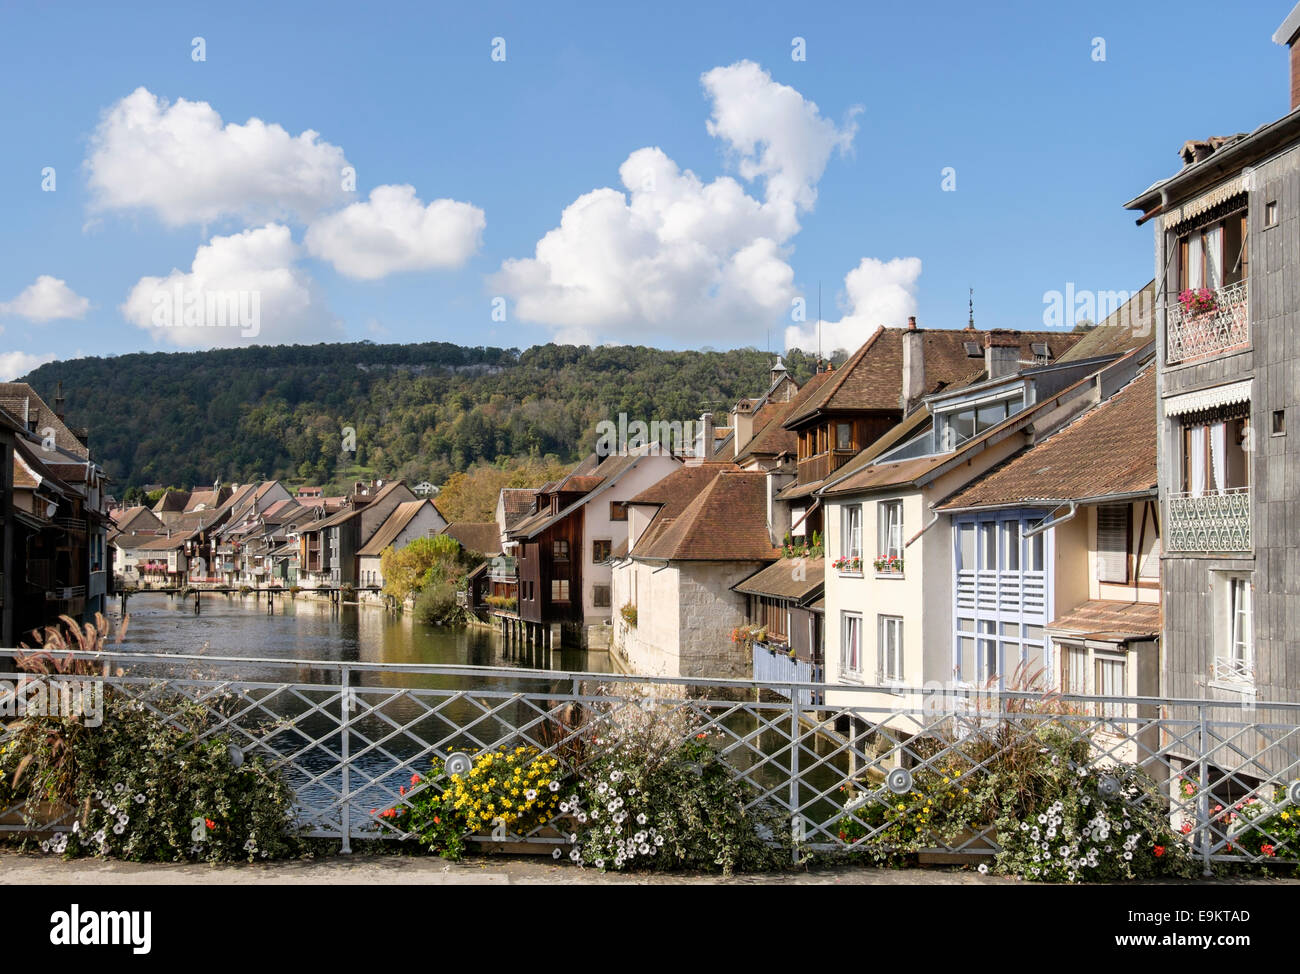 Malerische alte Häuser entlang dem Fluss Loue mit Blumen auf Brücke in Ornans, Doubs, Franche Comte, Frankreich Stockfoto